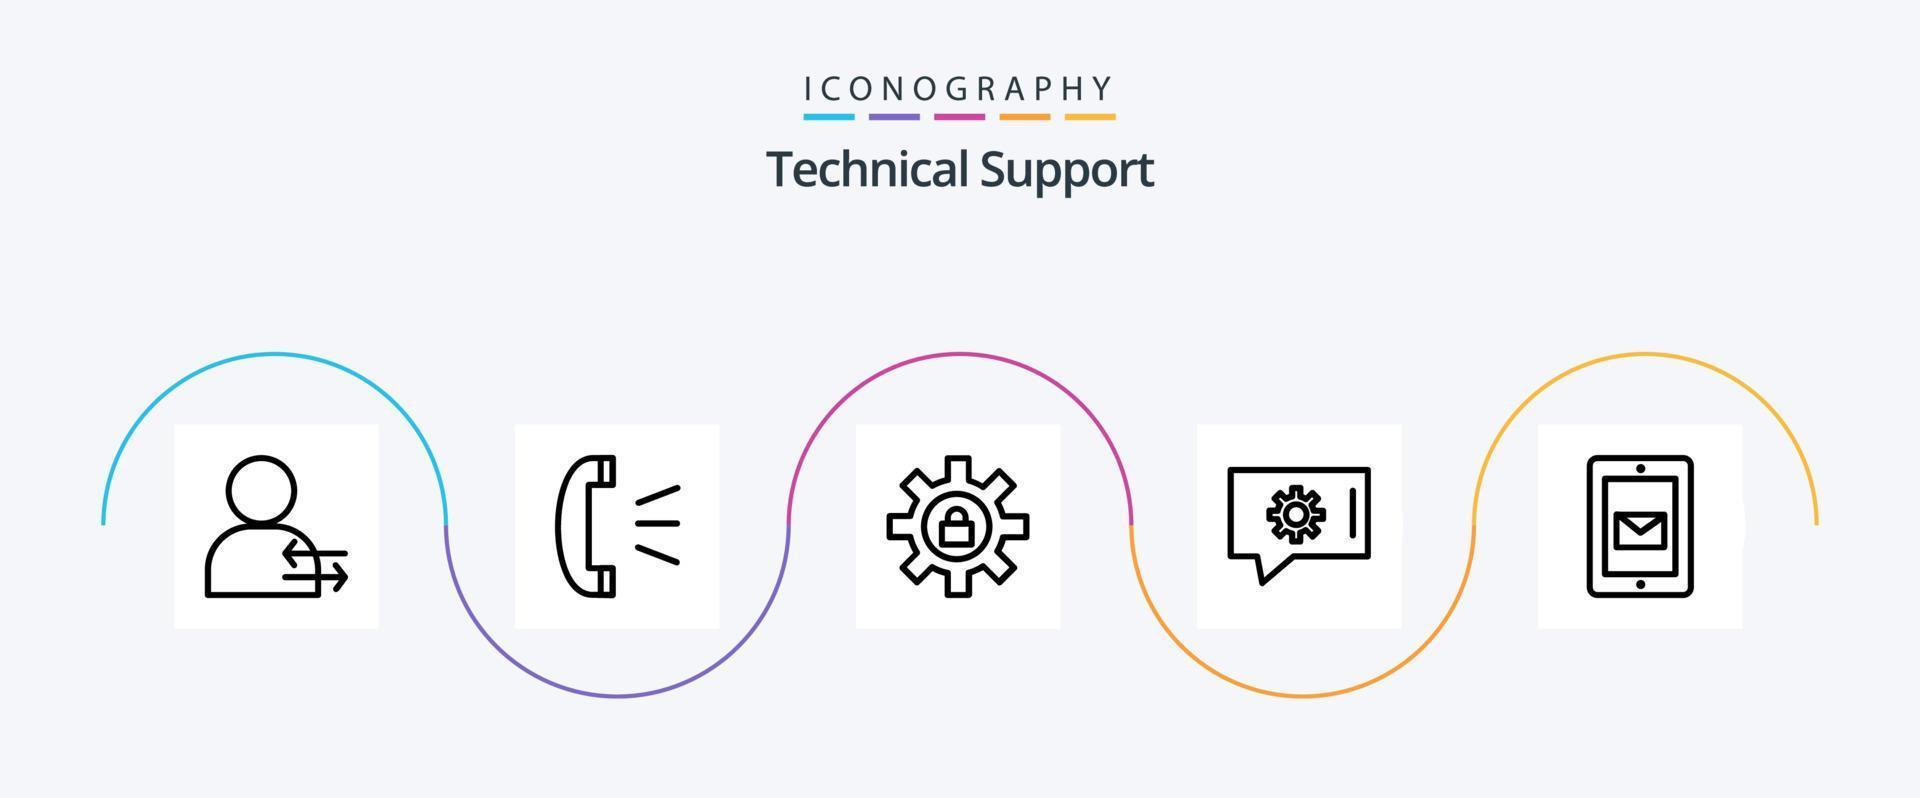 technique soutien ligne 5 icône pack comprenant service. mobile. engrenage. bavarder soutien. bavarder préférences vecteur